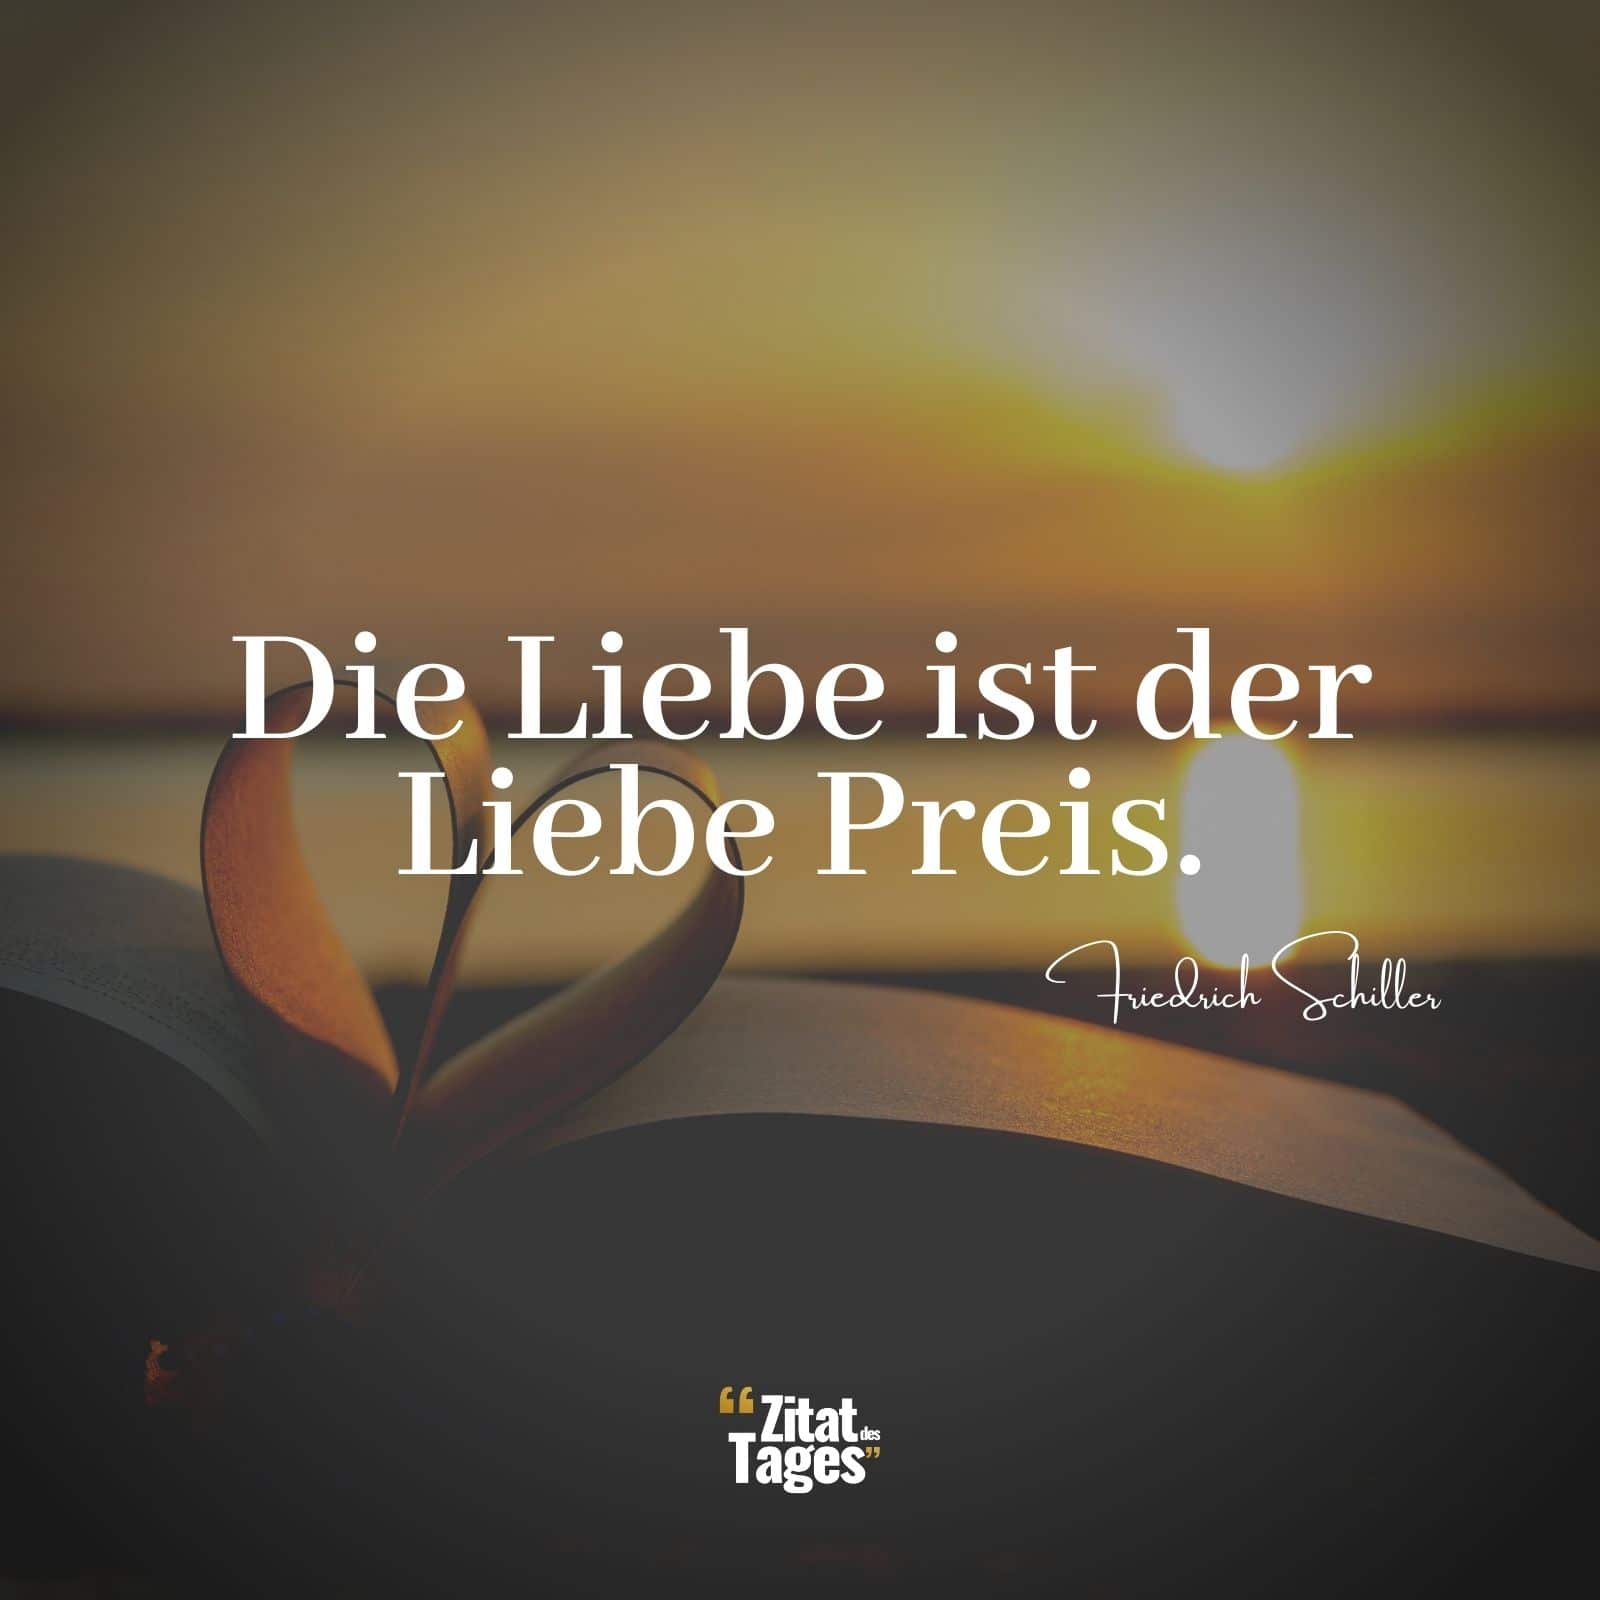 Die Liebe ist der Liebe Preis. - Friedrich Schiller